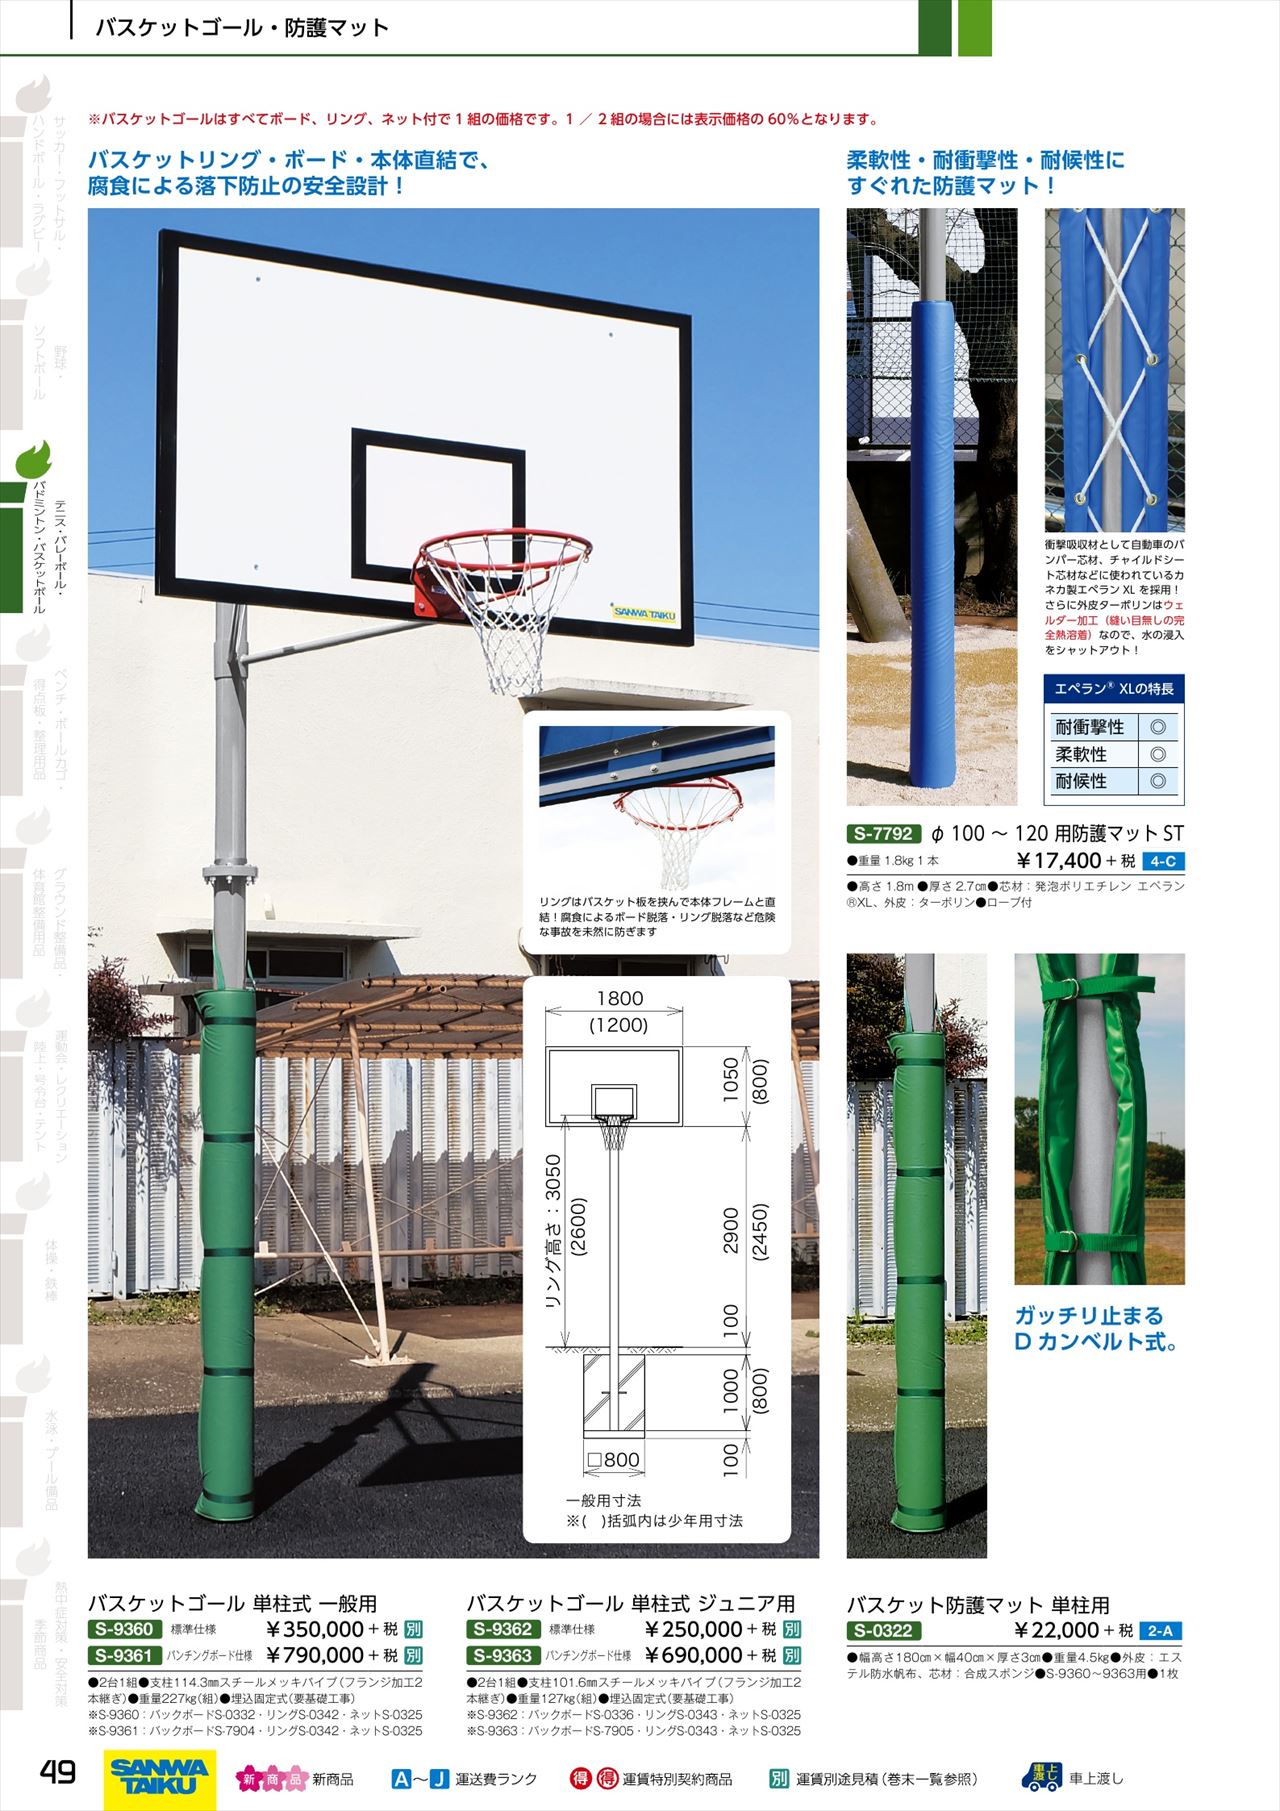 バスケット用防護マットは、三和体育2020カタログ の ページ49 に掲載 